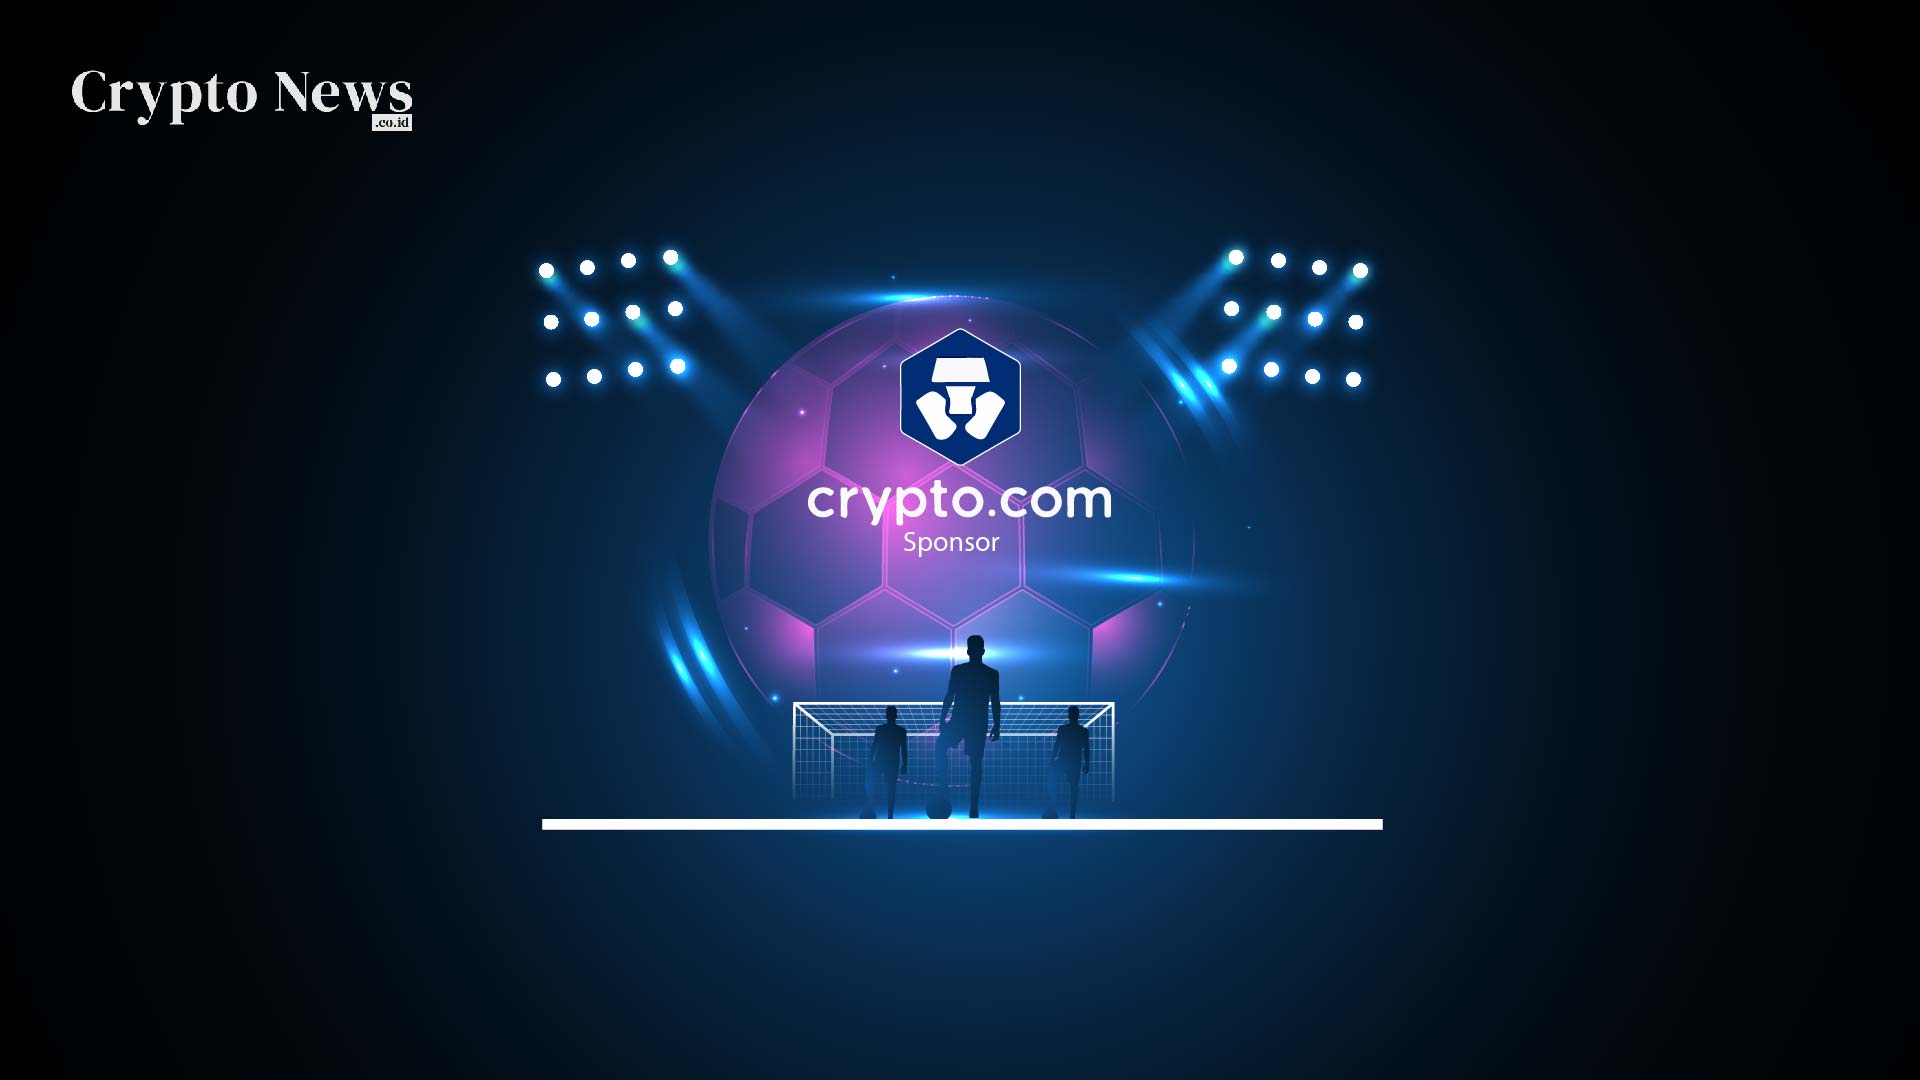 Illust : Platform Bursa Crypto.com Menjadi Sponsor Resmi Piala Dunia 2022